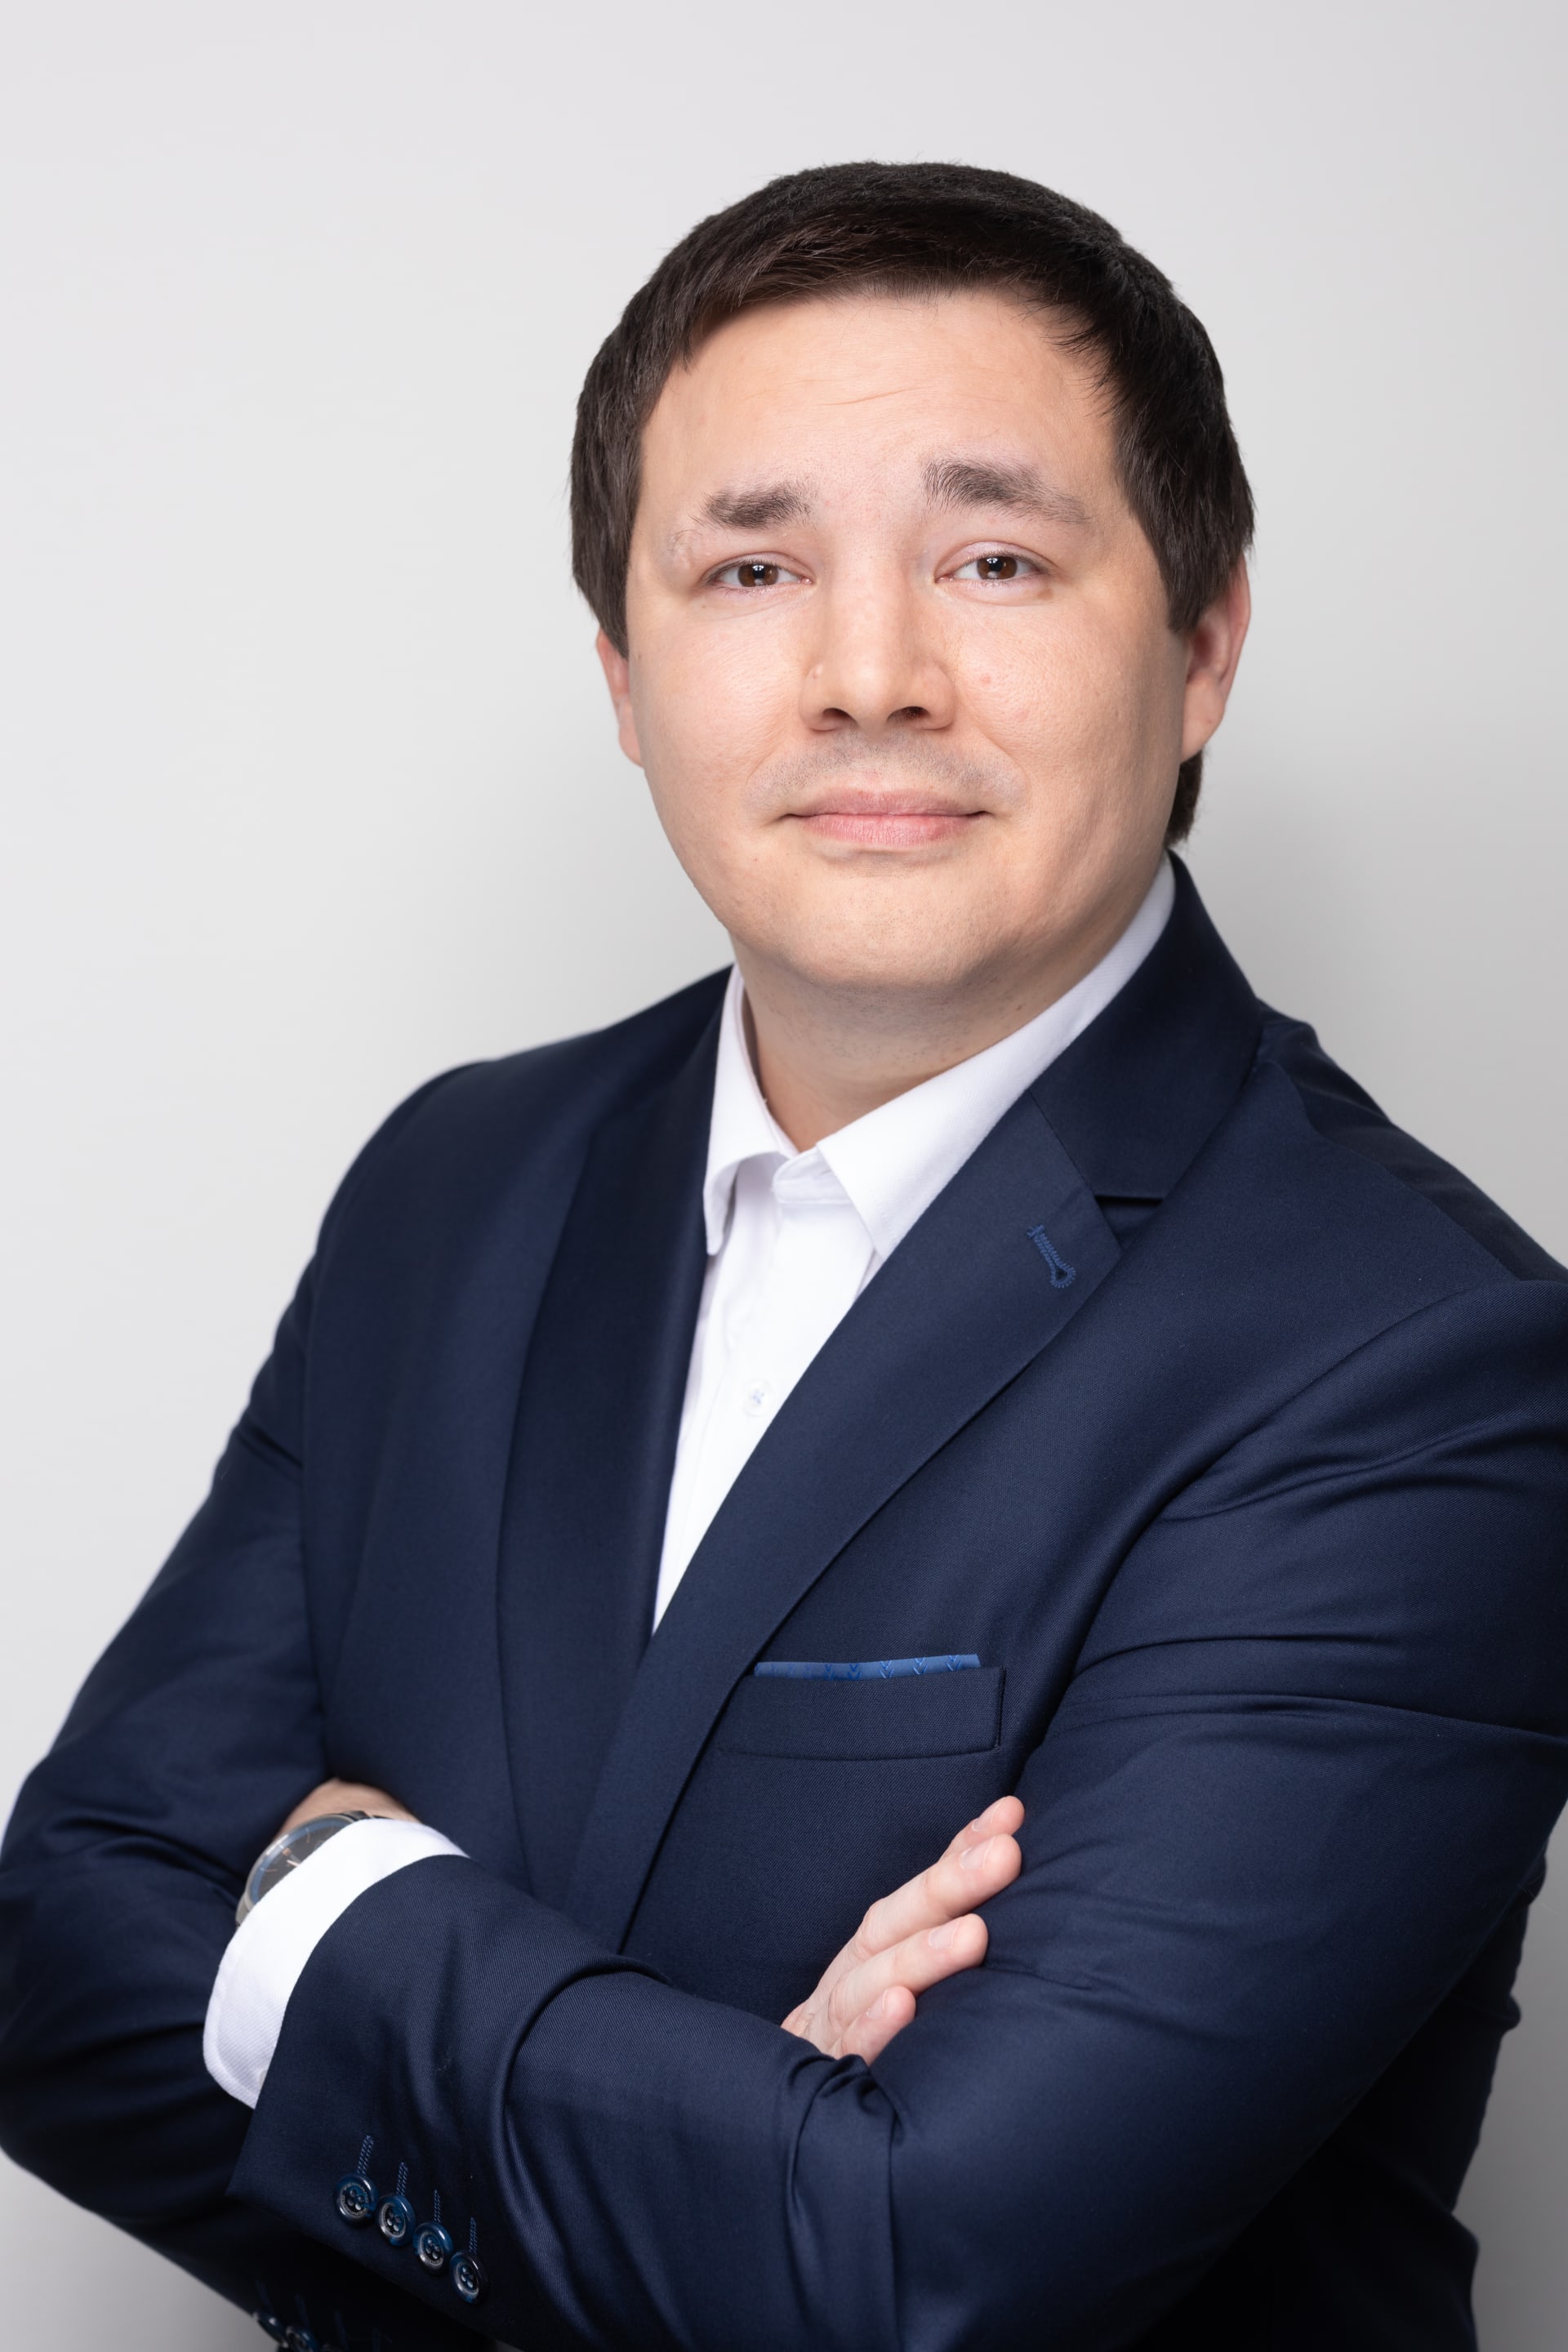 Vladimír Holovka, od roku 2013 ve společnosti XTB zastává funkci vedoucího obchodního oddělení pro Českou republiku, Slovensko a Maďarsko.